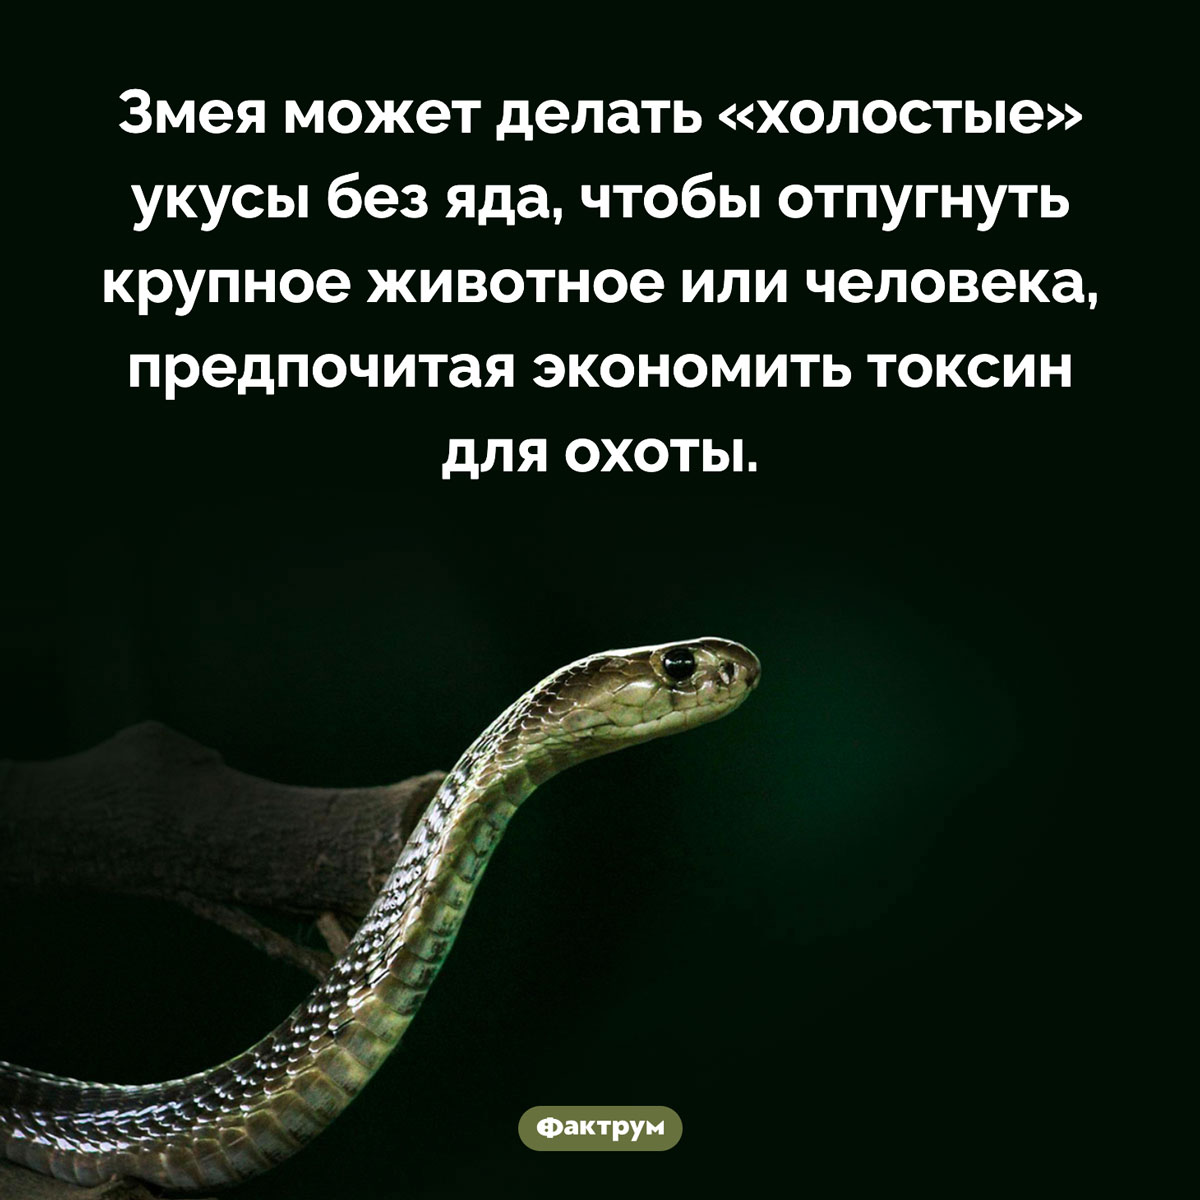 Змея не всегда использует яд. Змея может делать «холостые» укусы без яда, чтобы отпугнуть крупное животное или человека, предпочитая экономить токсин для охоты.